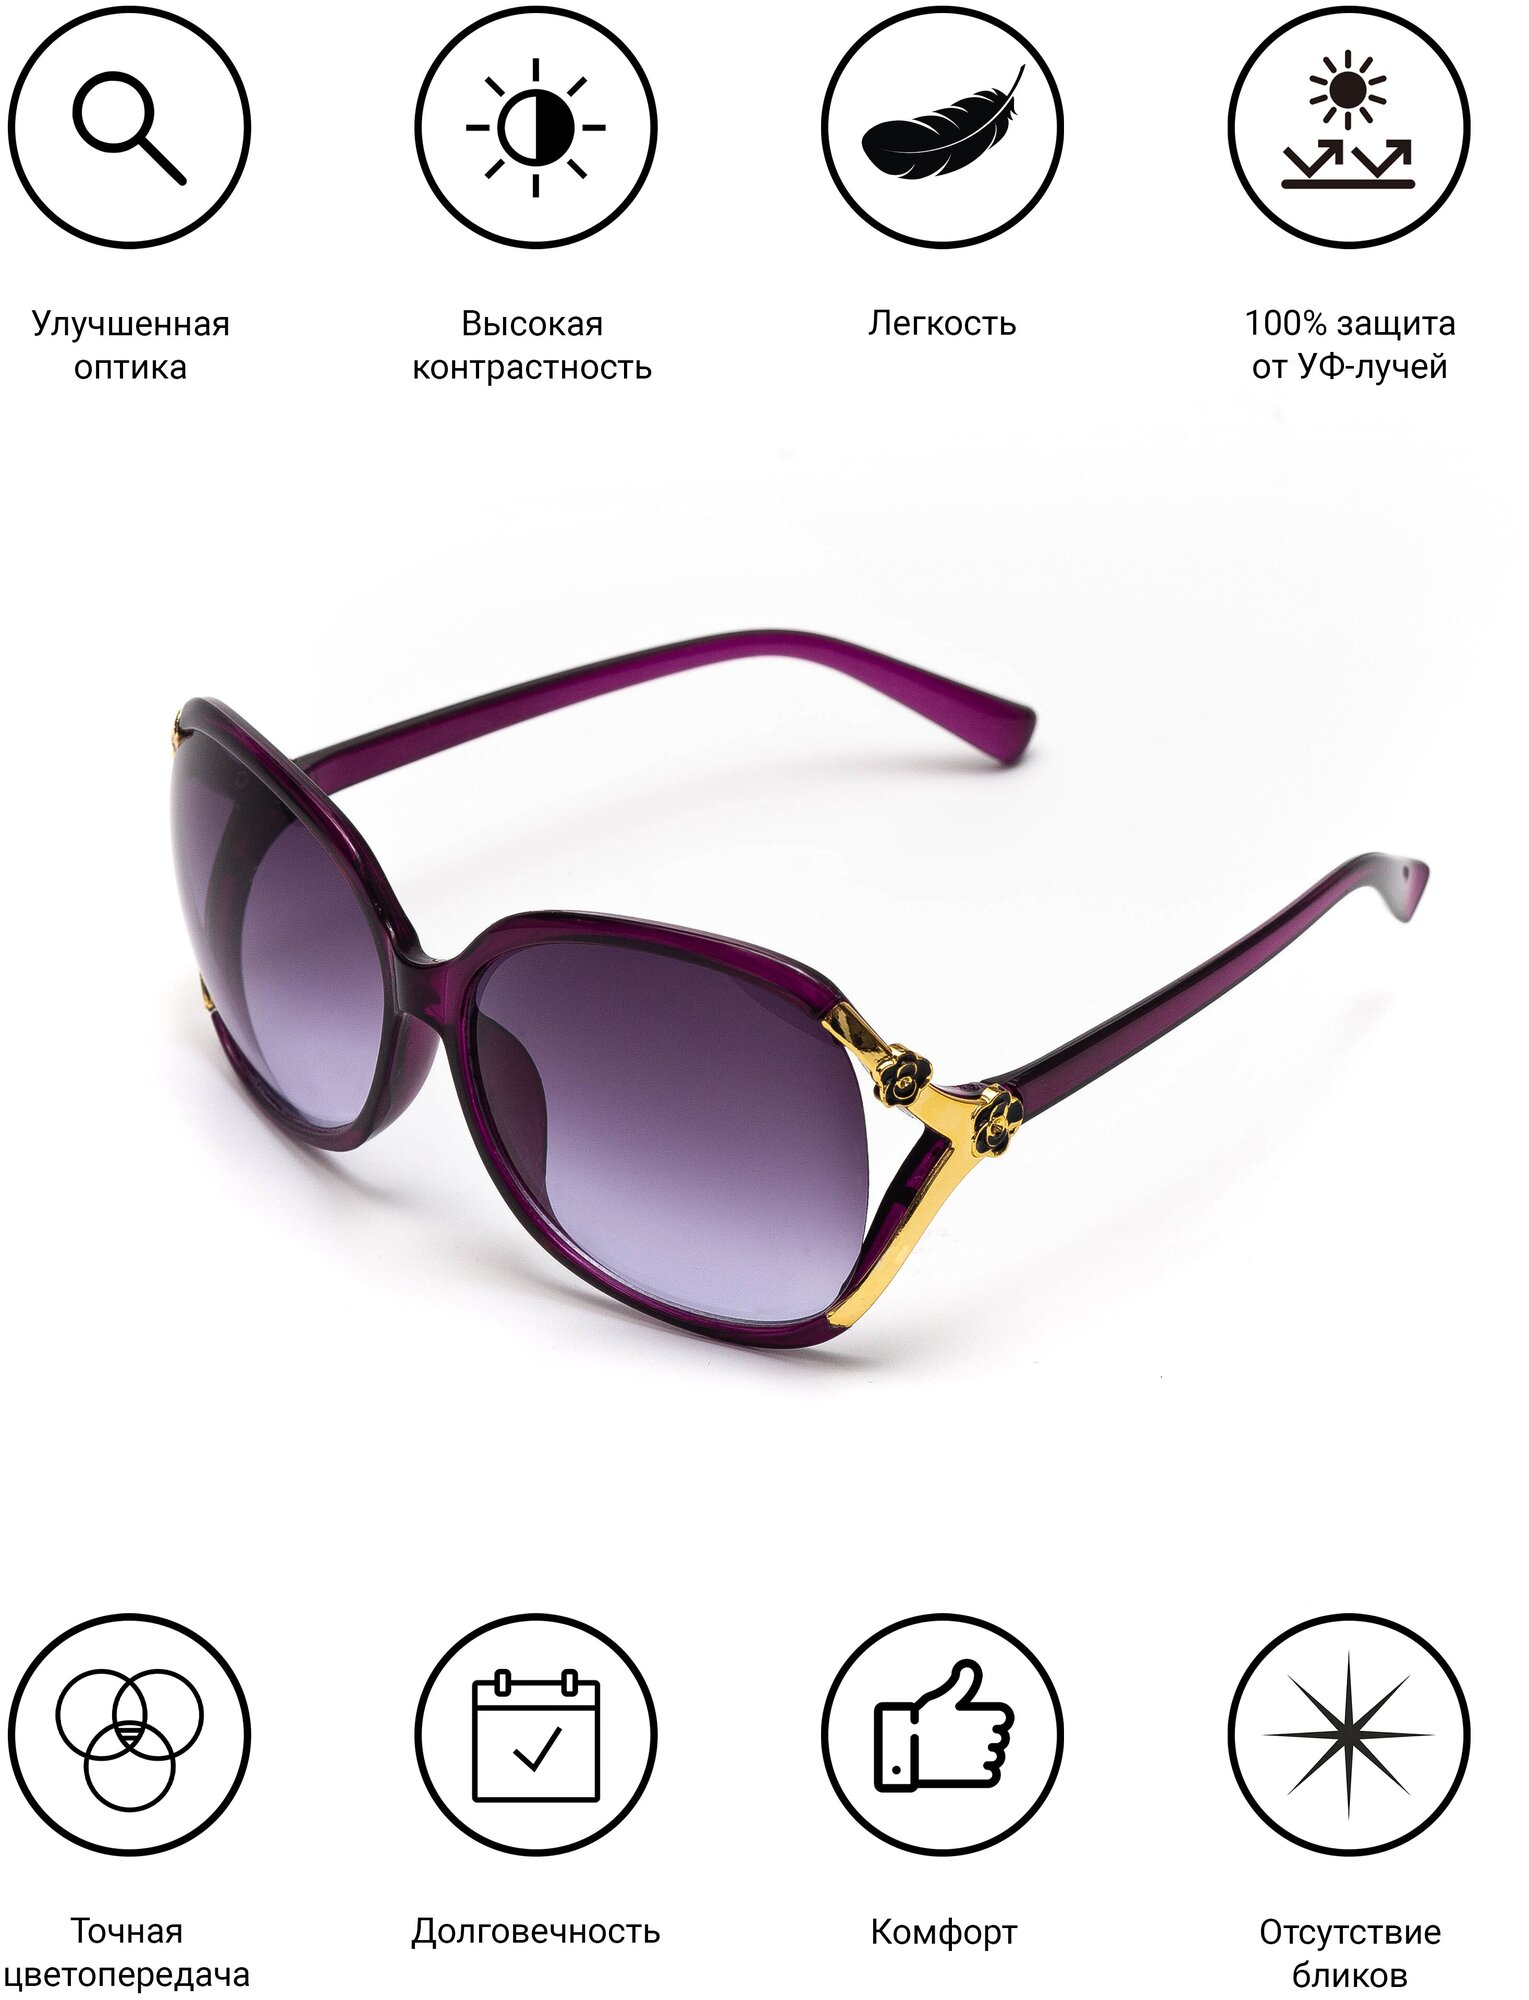 Солнцезащитные очки женские / Оправа кошачий глаз / Стильные очки / Ультрафиолетовый фильтр / Защита UV400 /Модный аксессуар/ 2009001